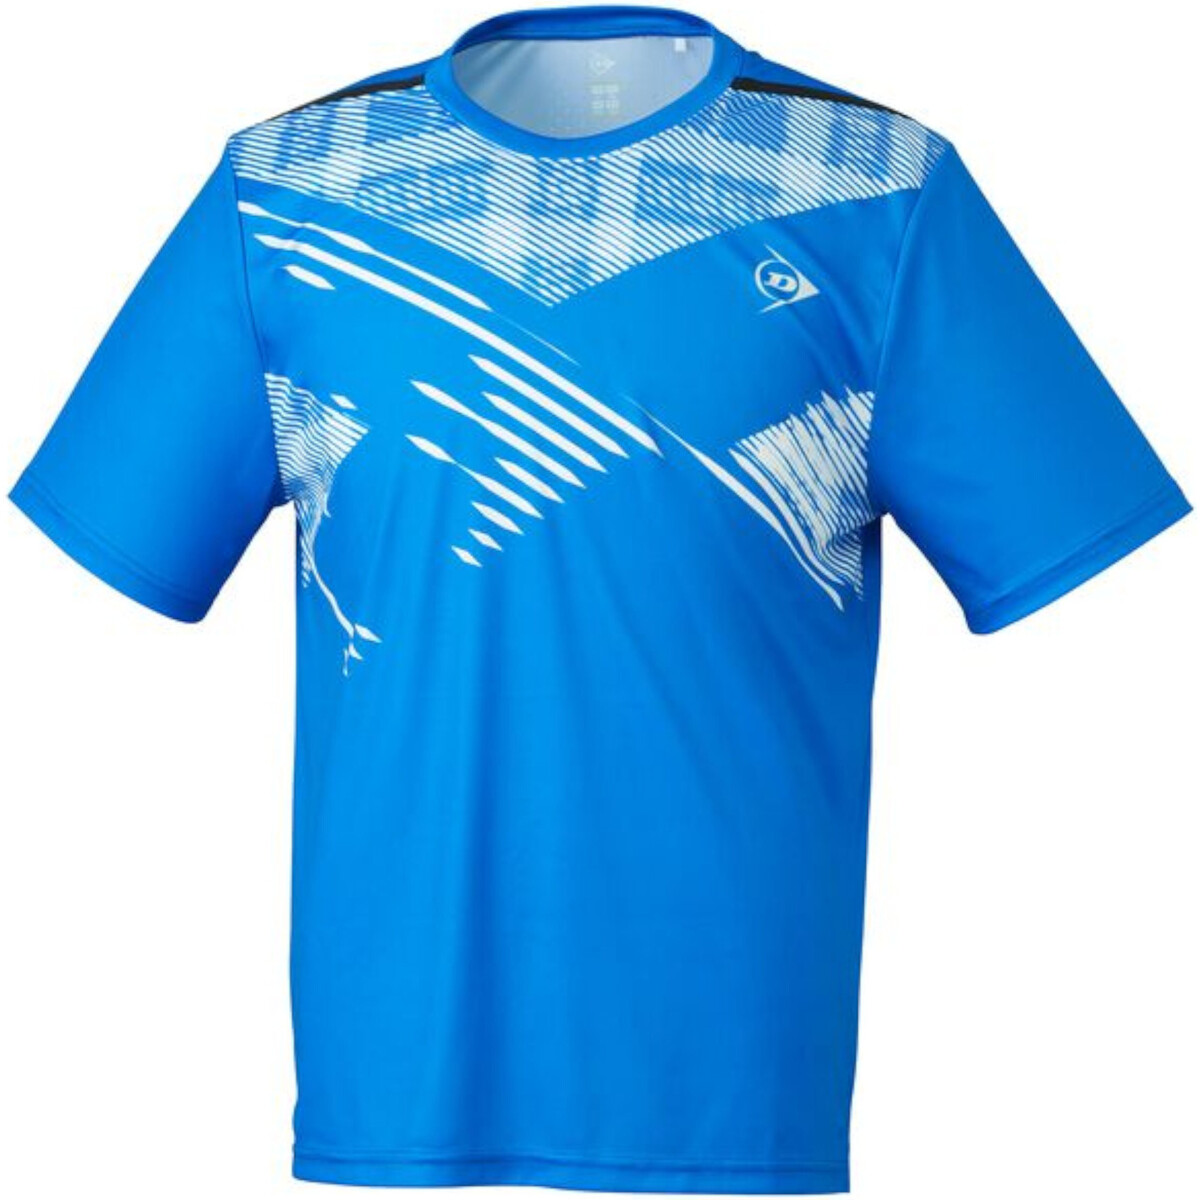 Kleidung Herren T-Shirts Dunlop 880001 Blau